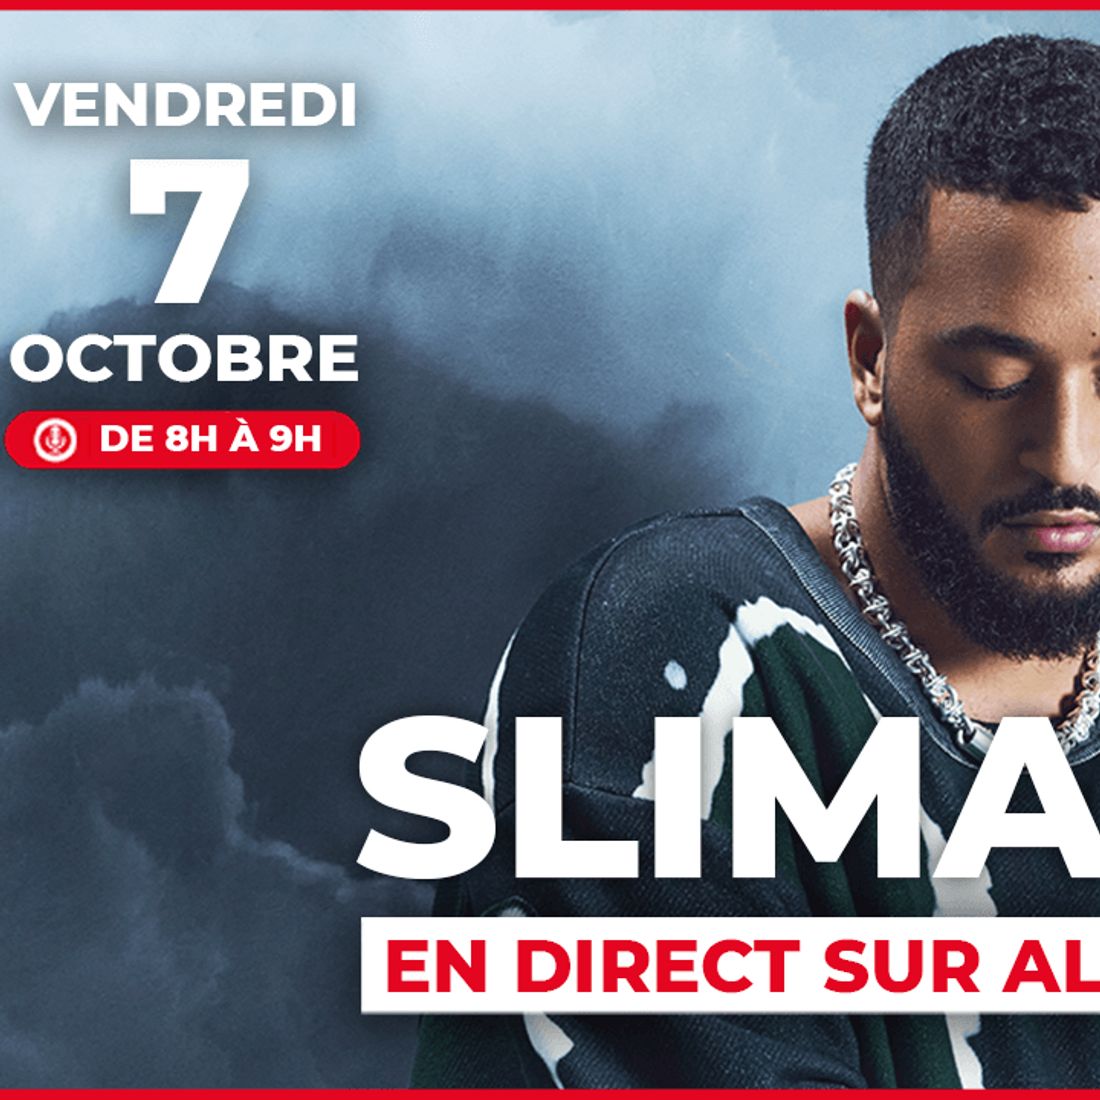 Slimane sera en direct sur Alouette le 7 octobre !